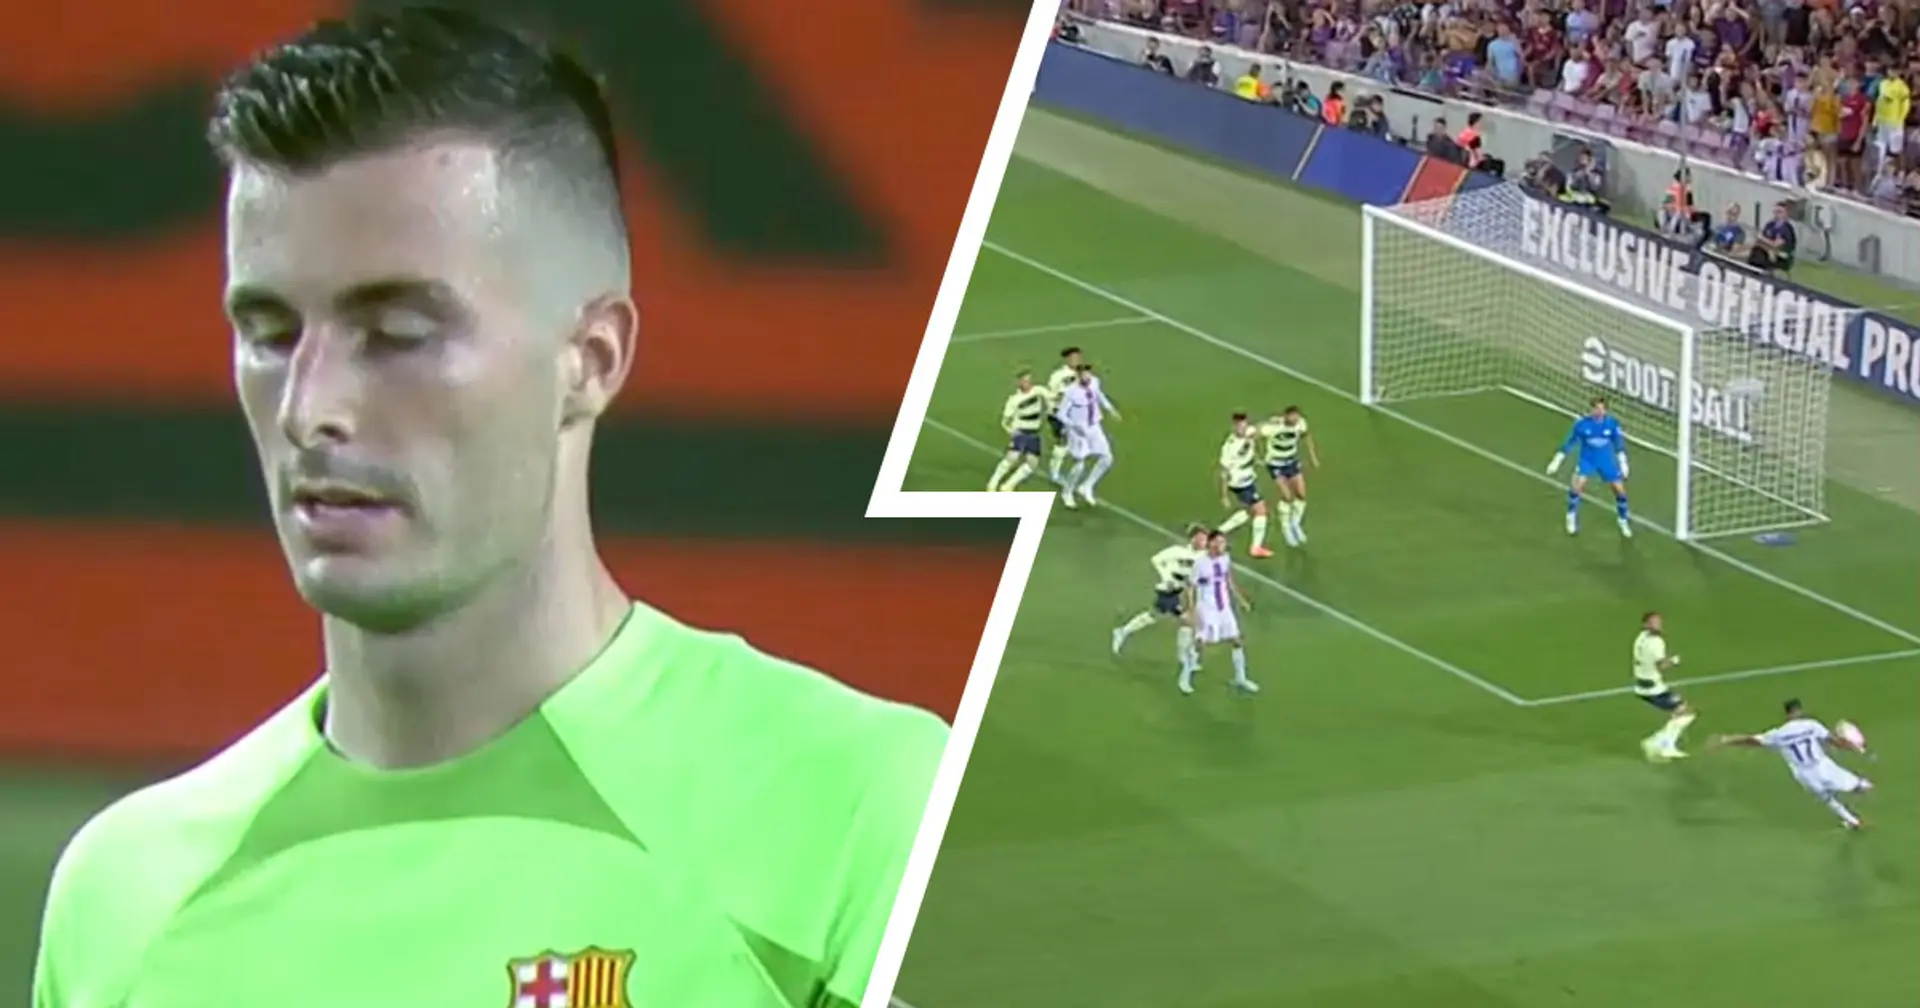 Impresionante remate de Auba, error de Iñaki Peña y más: lo más destacado del Barcelona vs Man City